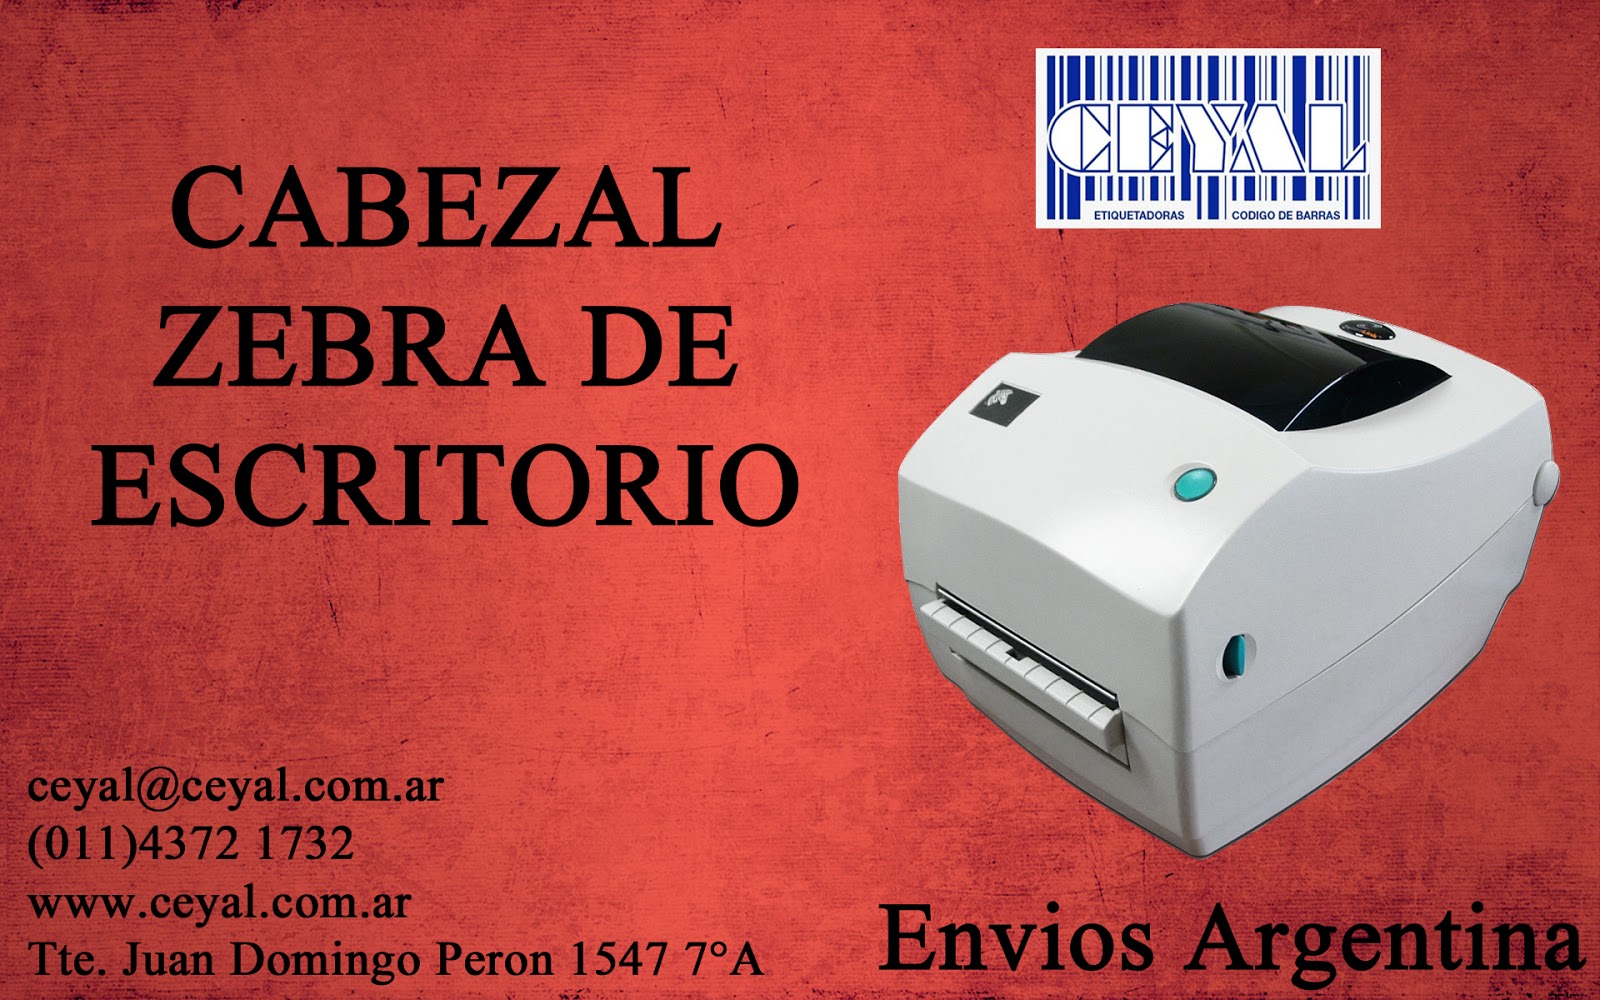 Argentina accesorios para el etiquetado en laboratorios y droguerias Rafael Calzada argentina